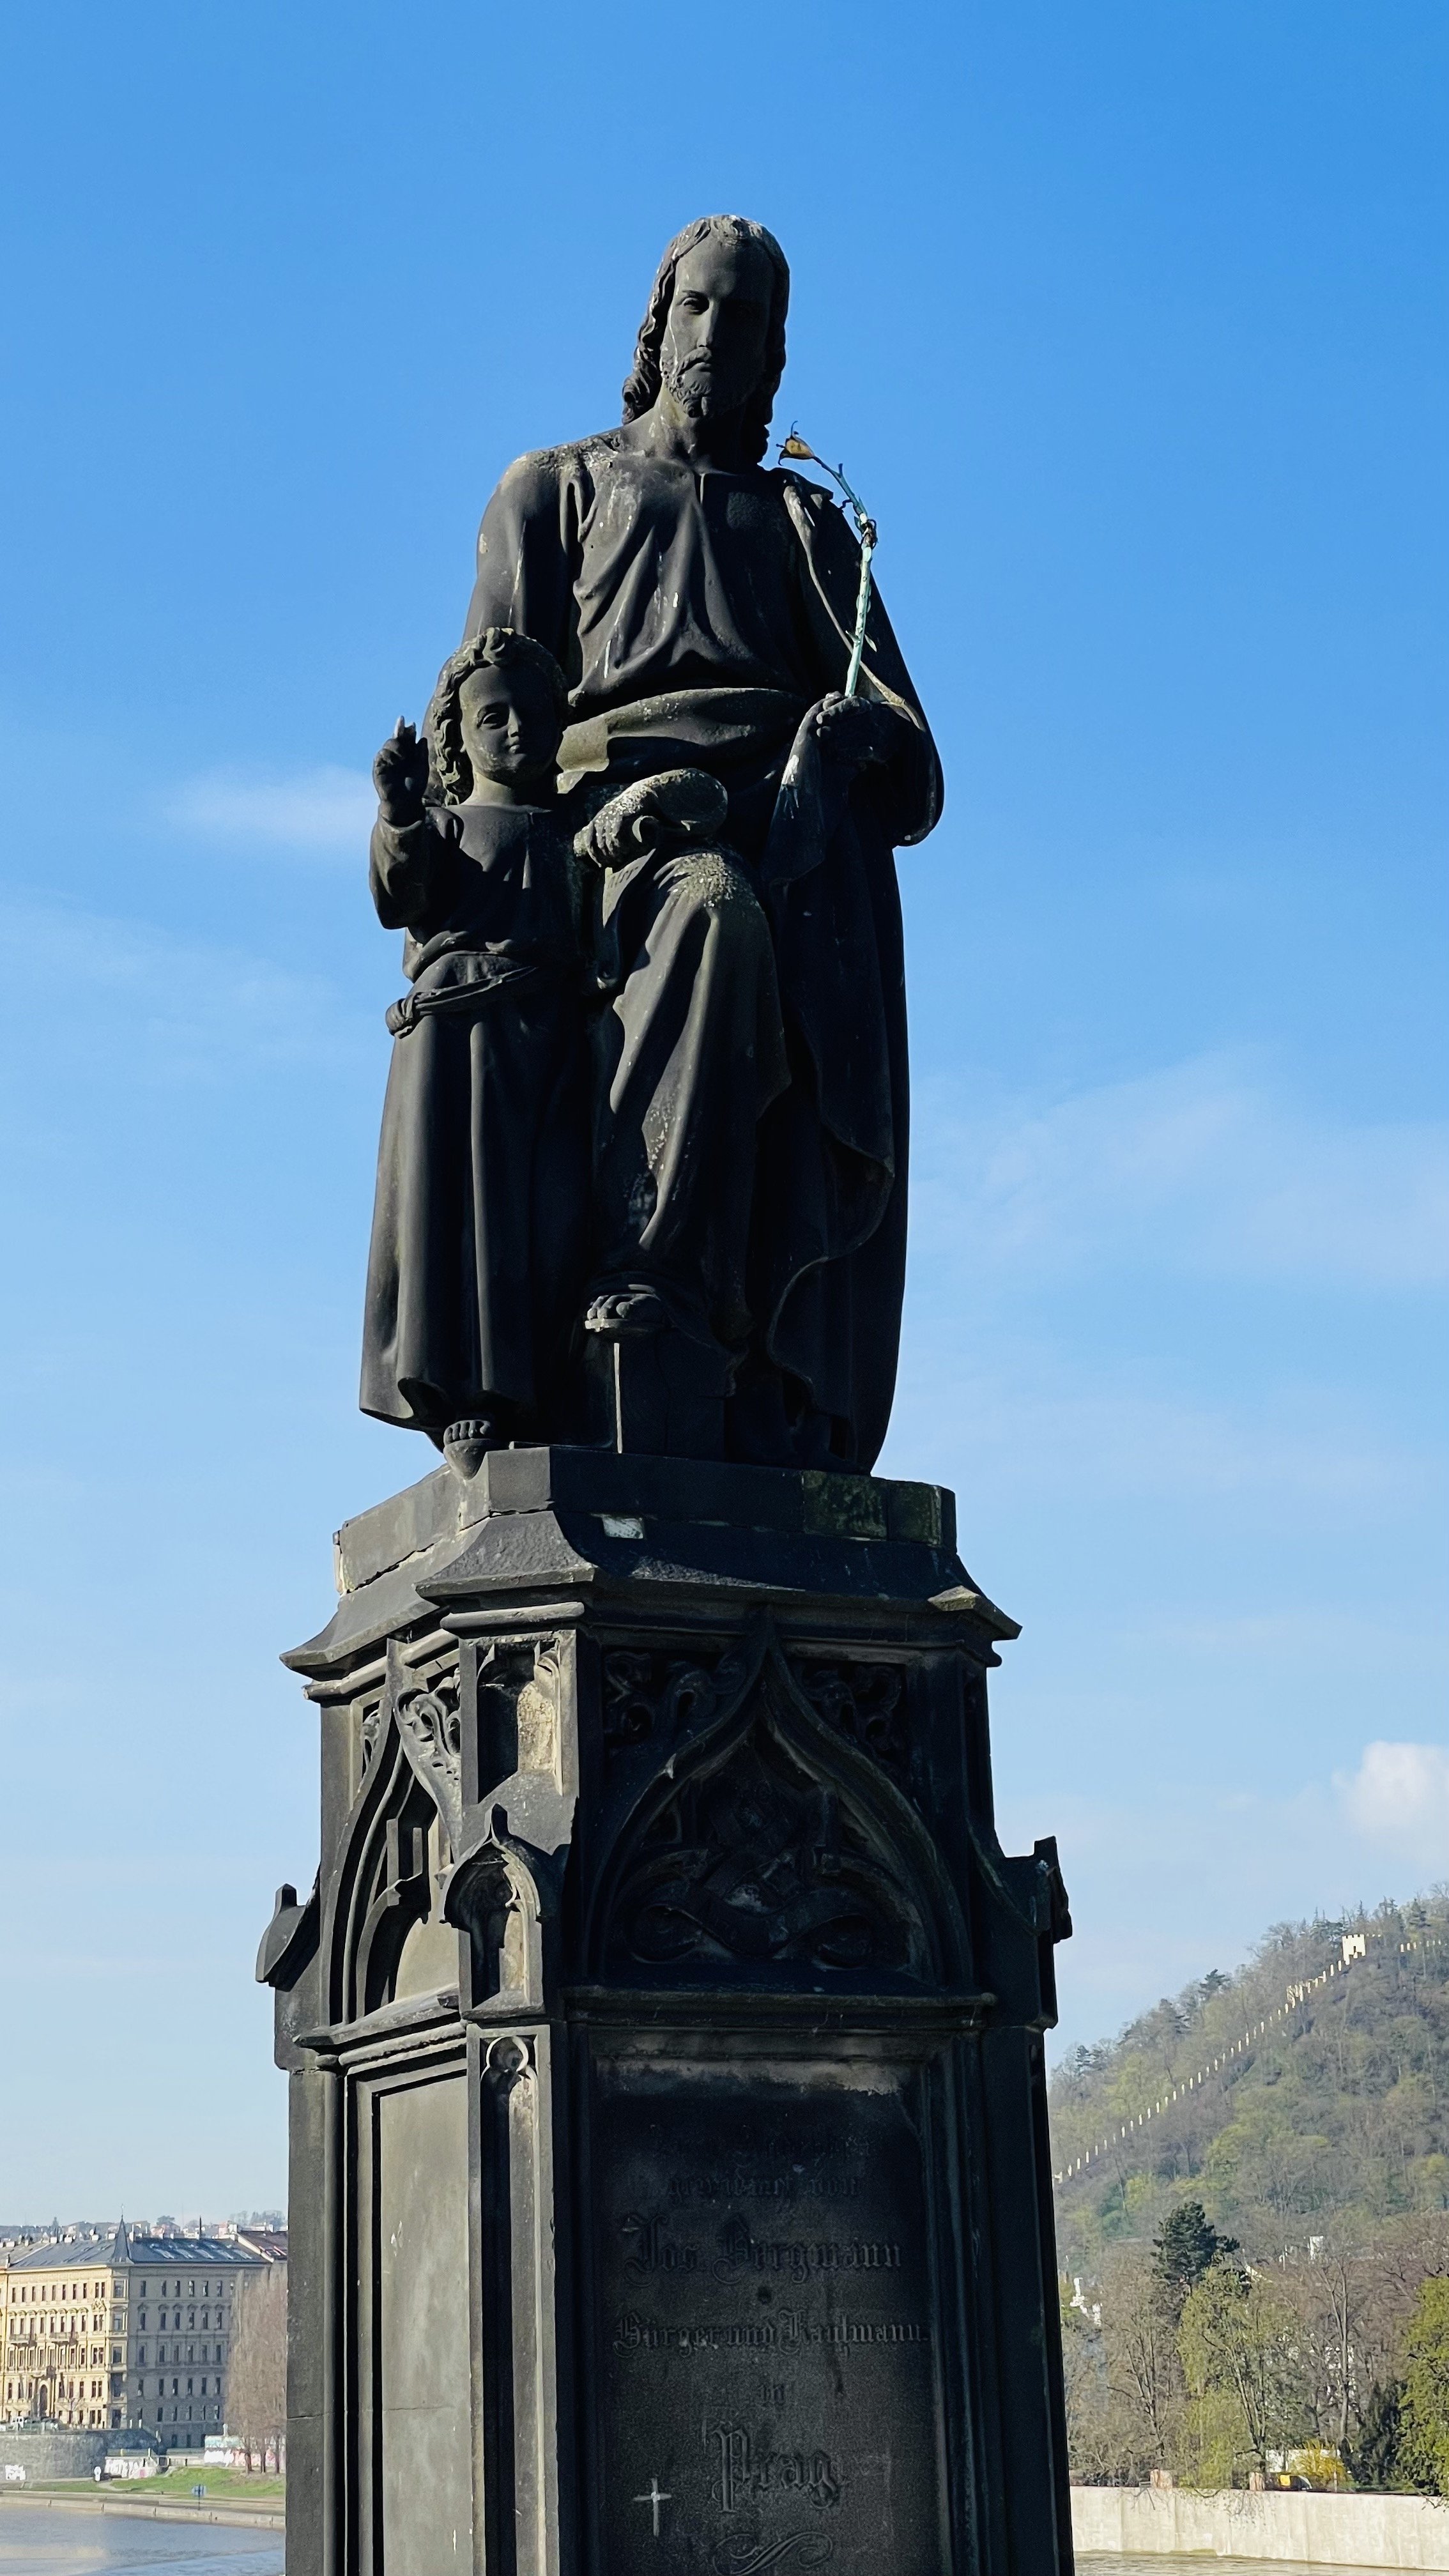 Statue of Saint Joseph in Charles Bridge (Copia)